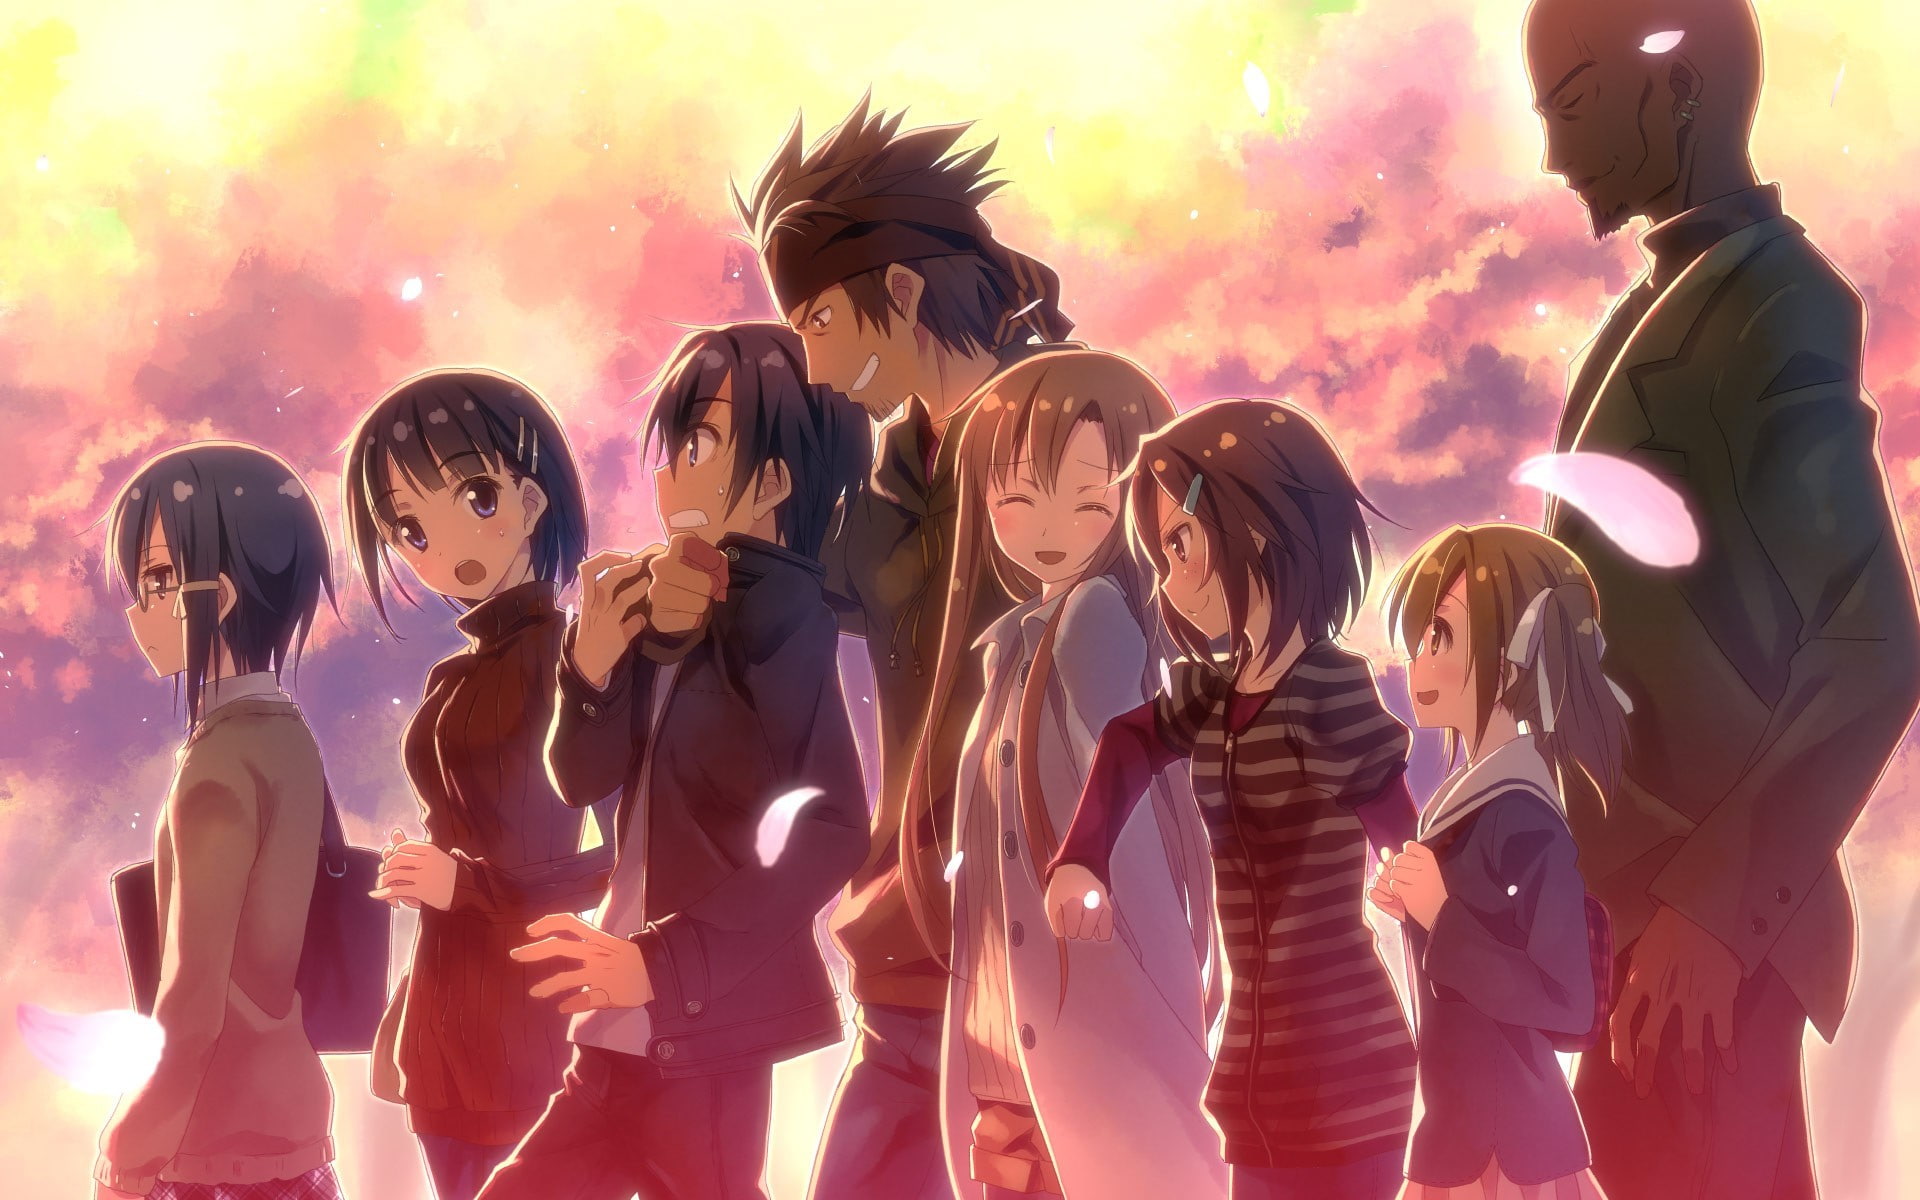 Sword Art Online, Anime, Yuuki Asuna, Kirigaya Kazuto, Kirigaya Suguha, Asada Shino, Shinozaki Rika, Alicia Rue, Kayaba Akihiko, Tsuboi Ryotaro